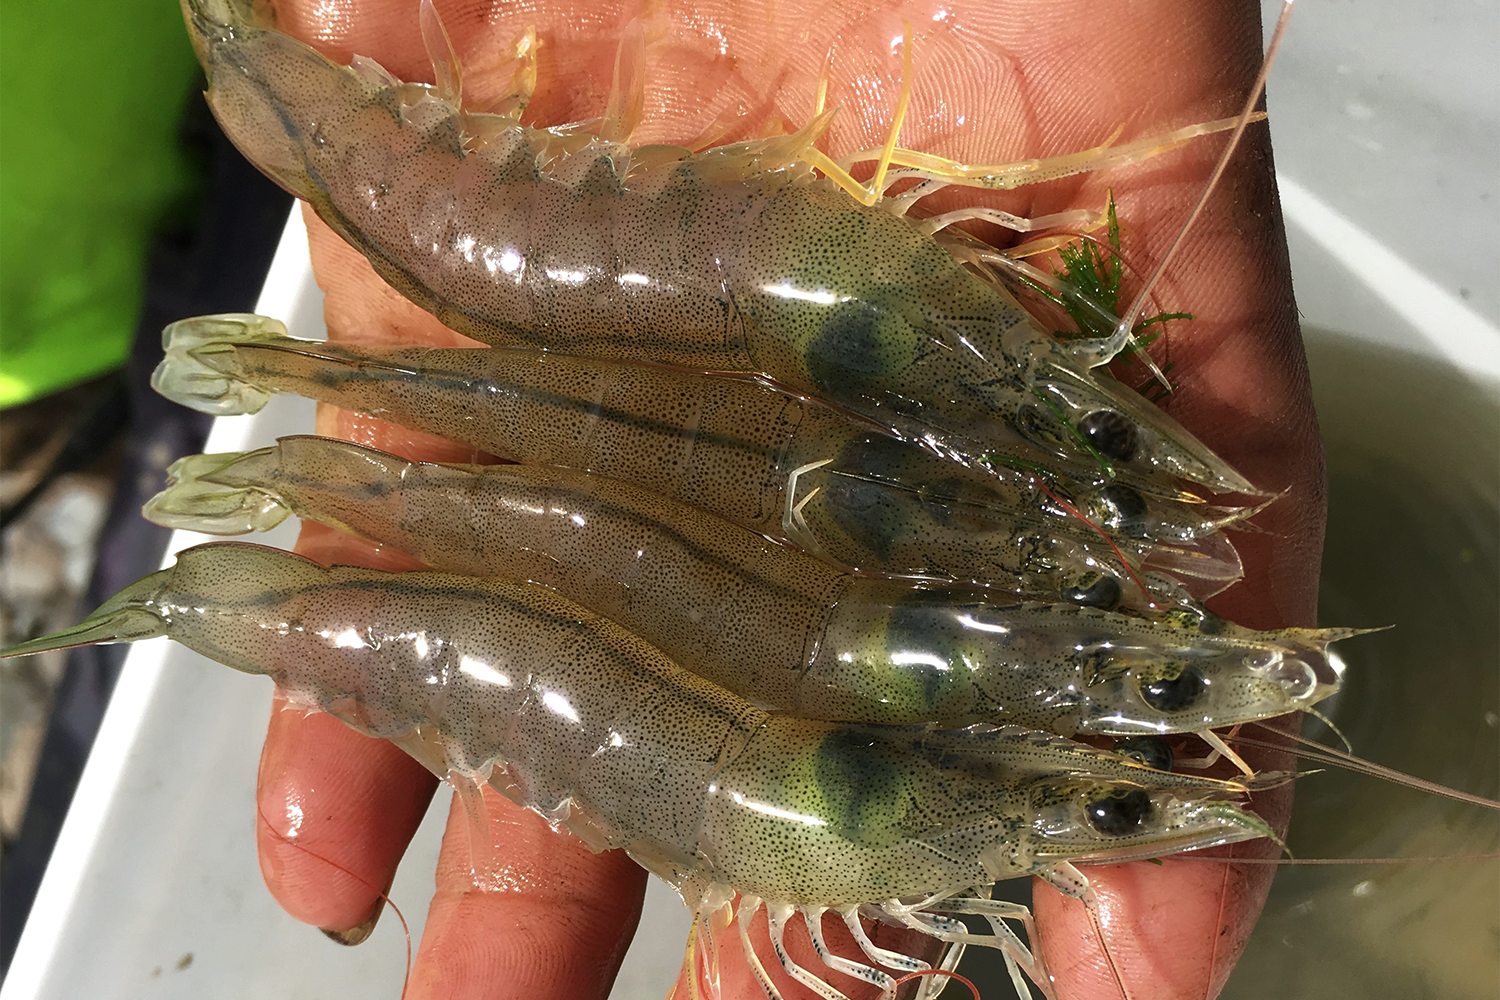 shrimp production